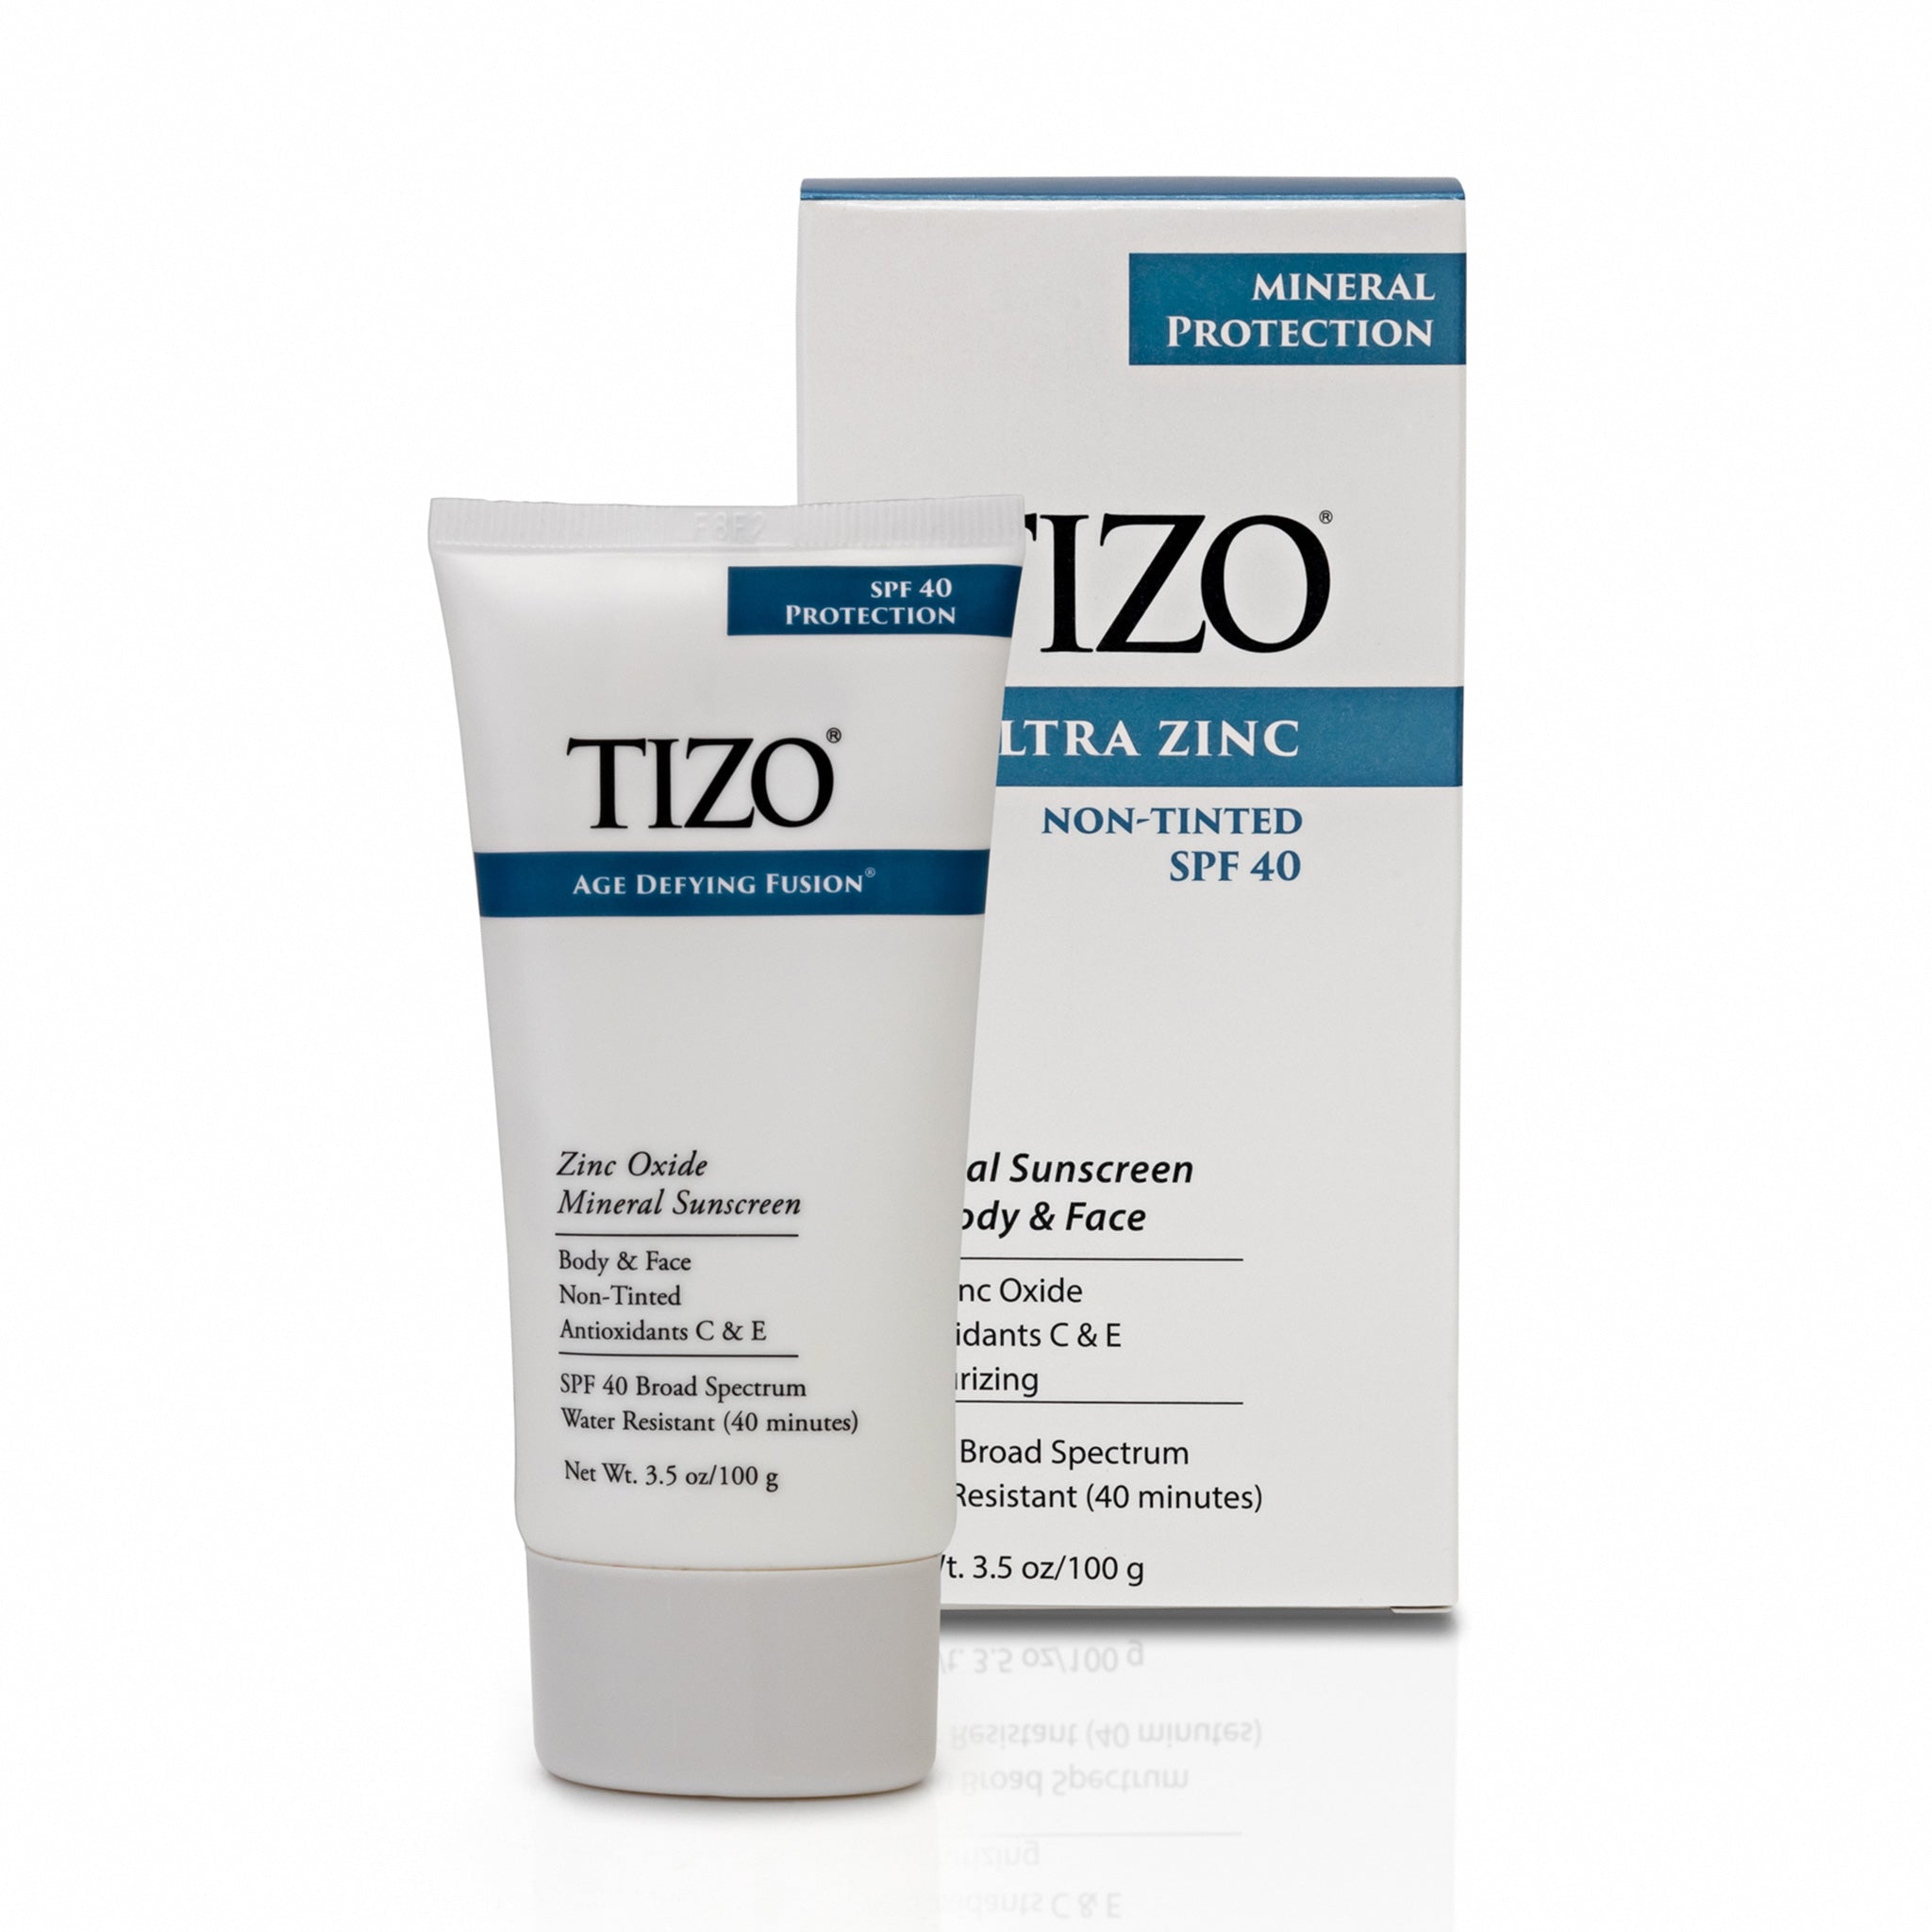 TIZO Ultra Zinc Mineral Sunscreen, Non-Tinted SPF 40 - VHB Skincare